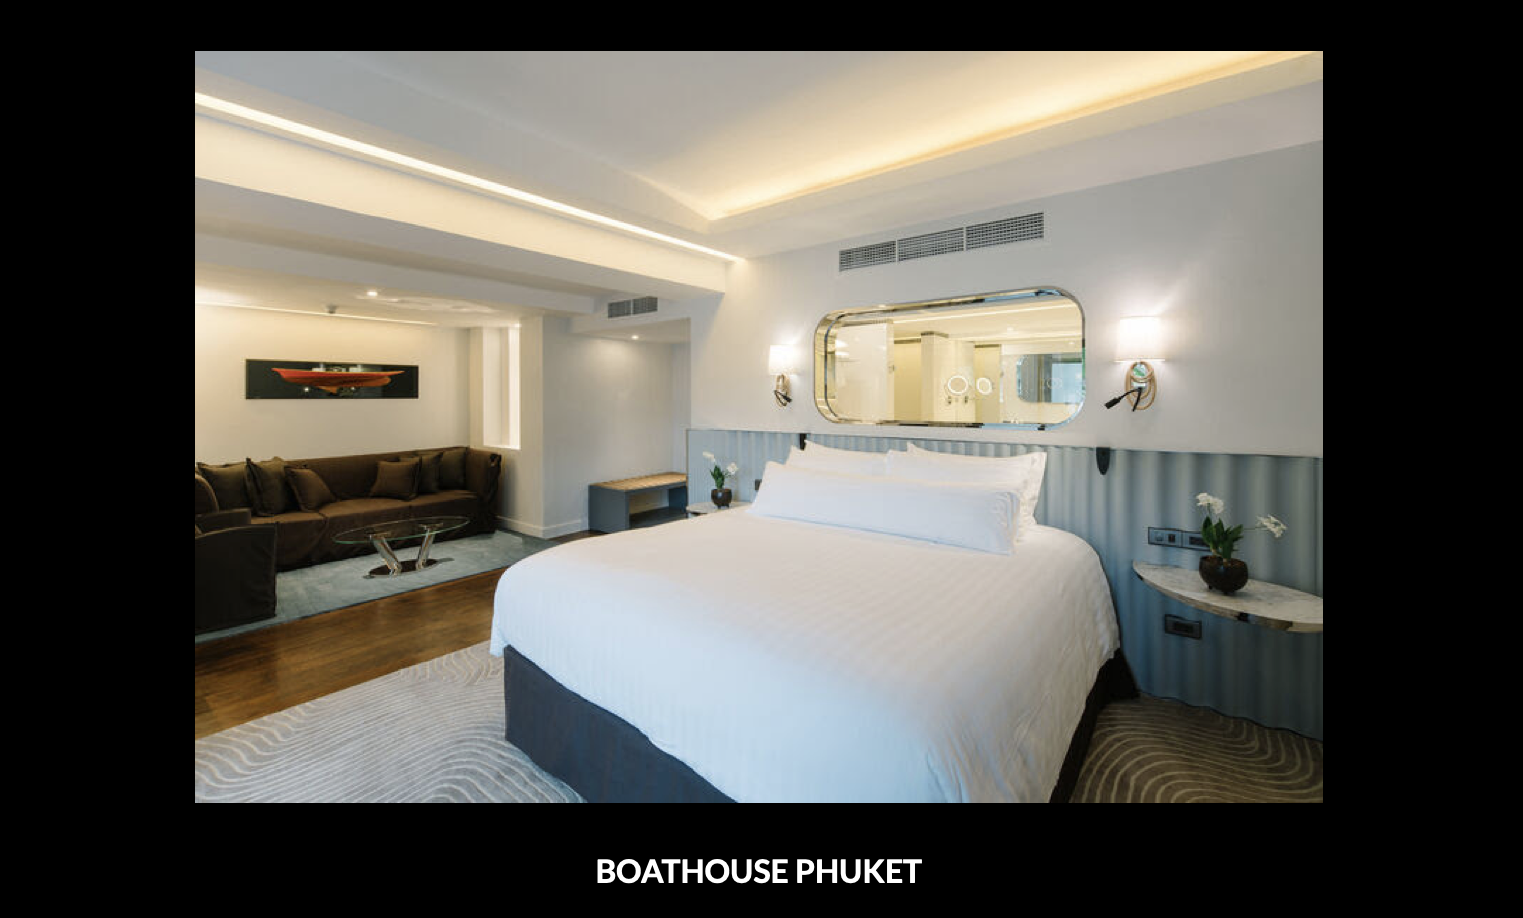 Top Hotel Design – Boathouse Phuket